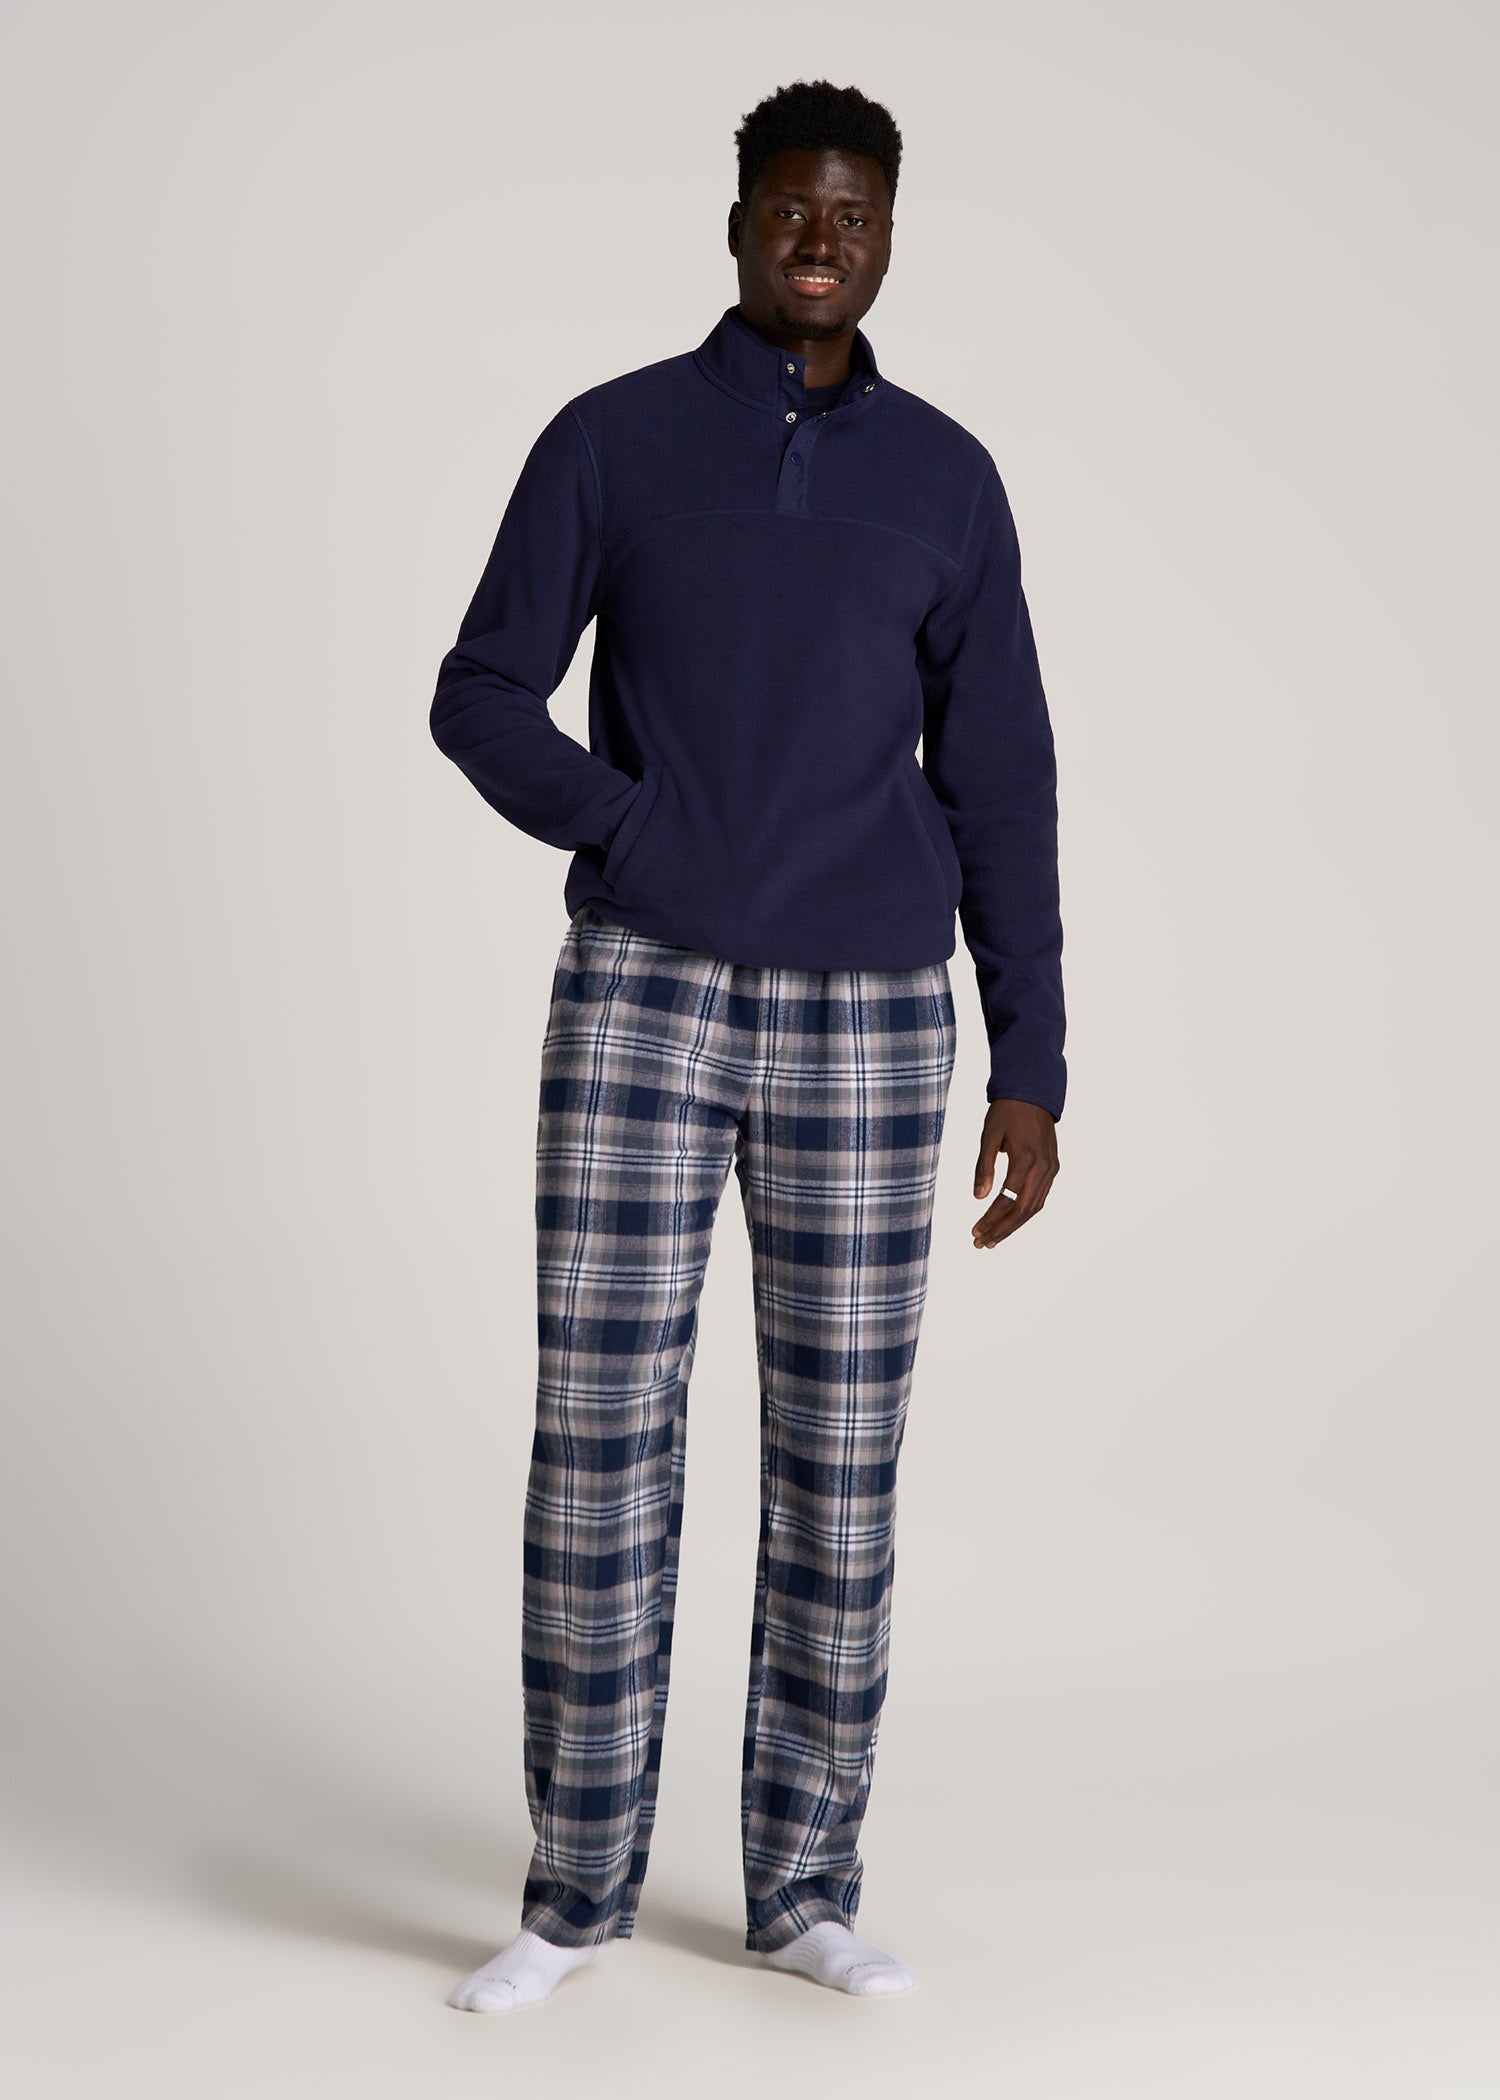 Men's Sleepwear Pants Plaid Pyjamas Navy Blue Pajamas